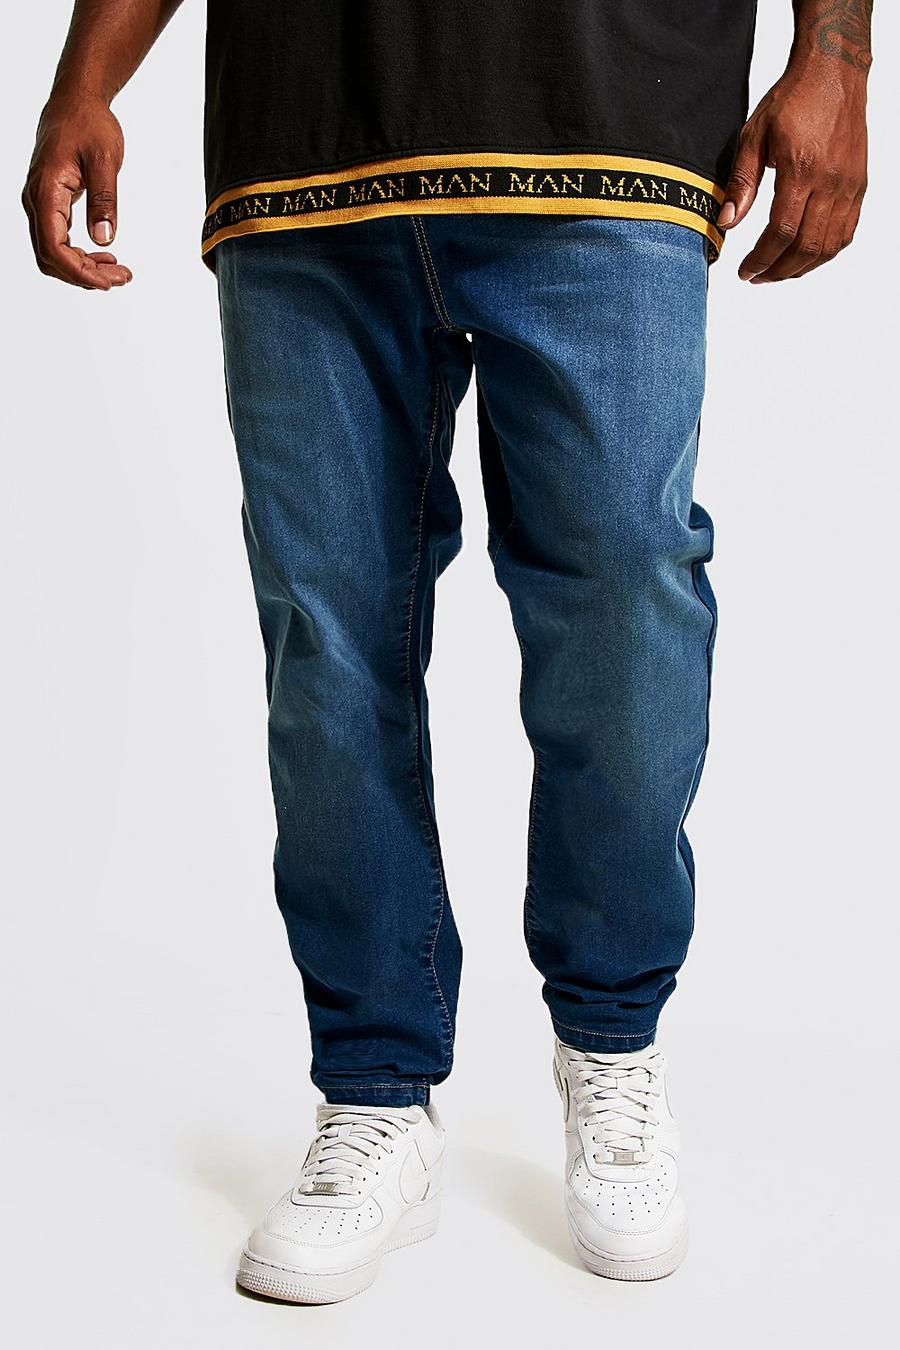 כחול ביניים azzurro סופר סקיני ג'ינס בשילוב פוליאסטר ממוחזר, מידות גדולות